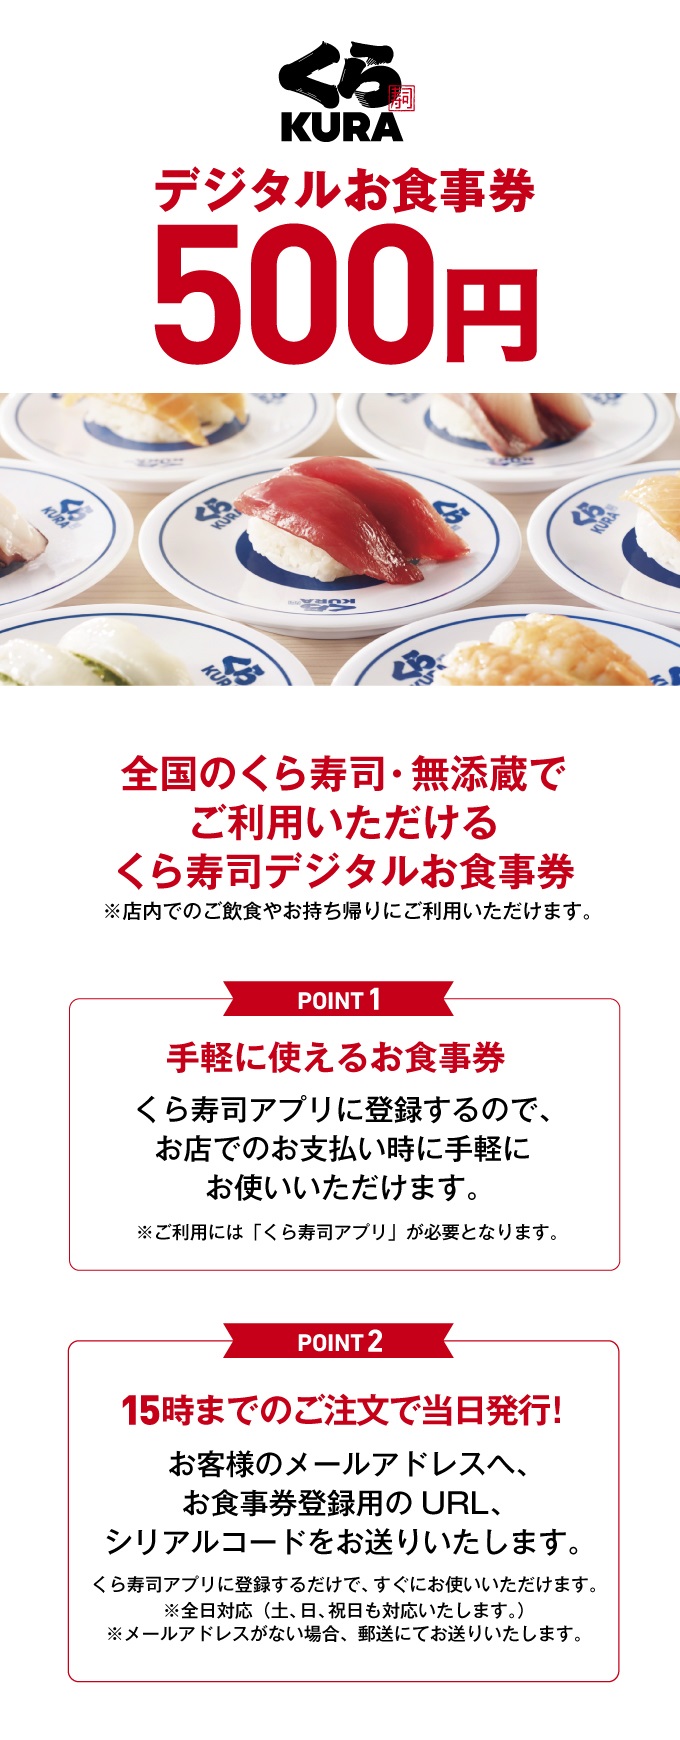 くら寿司 デジタルお食事券 【500円/枚】